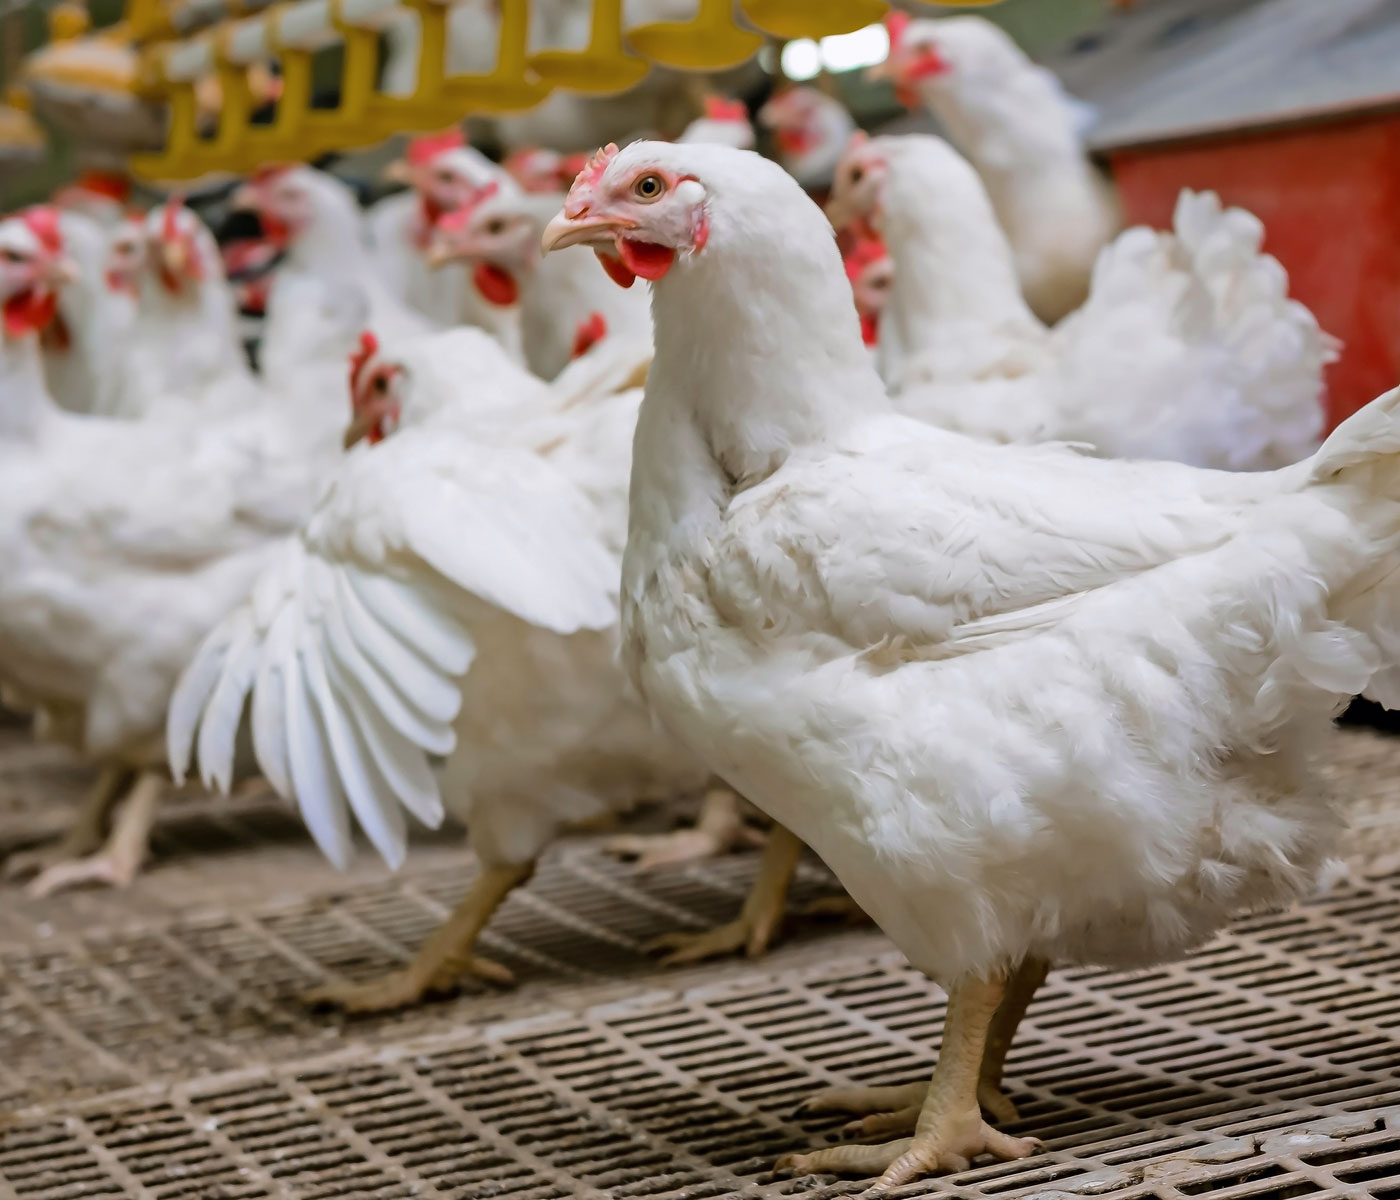 Cómo es la alimentación en granjas avícolas de reproductoras pesadas